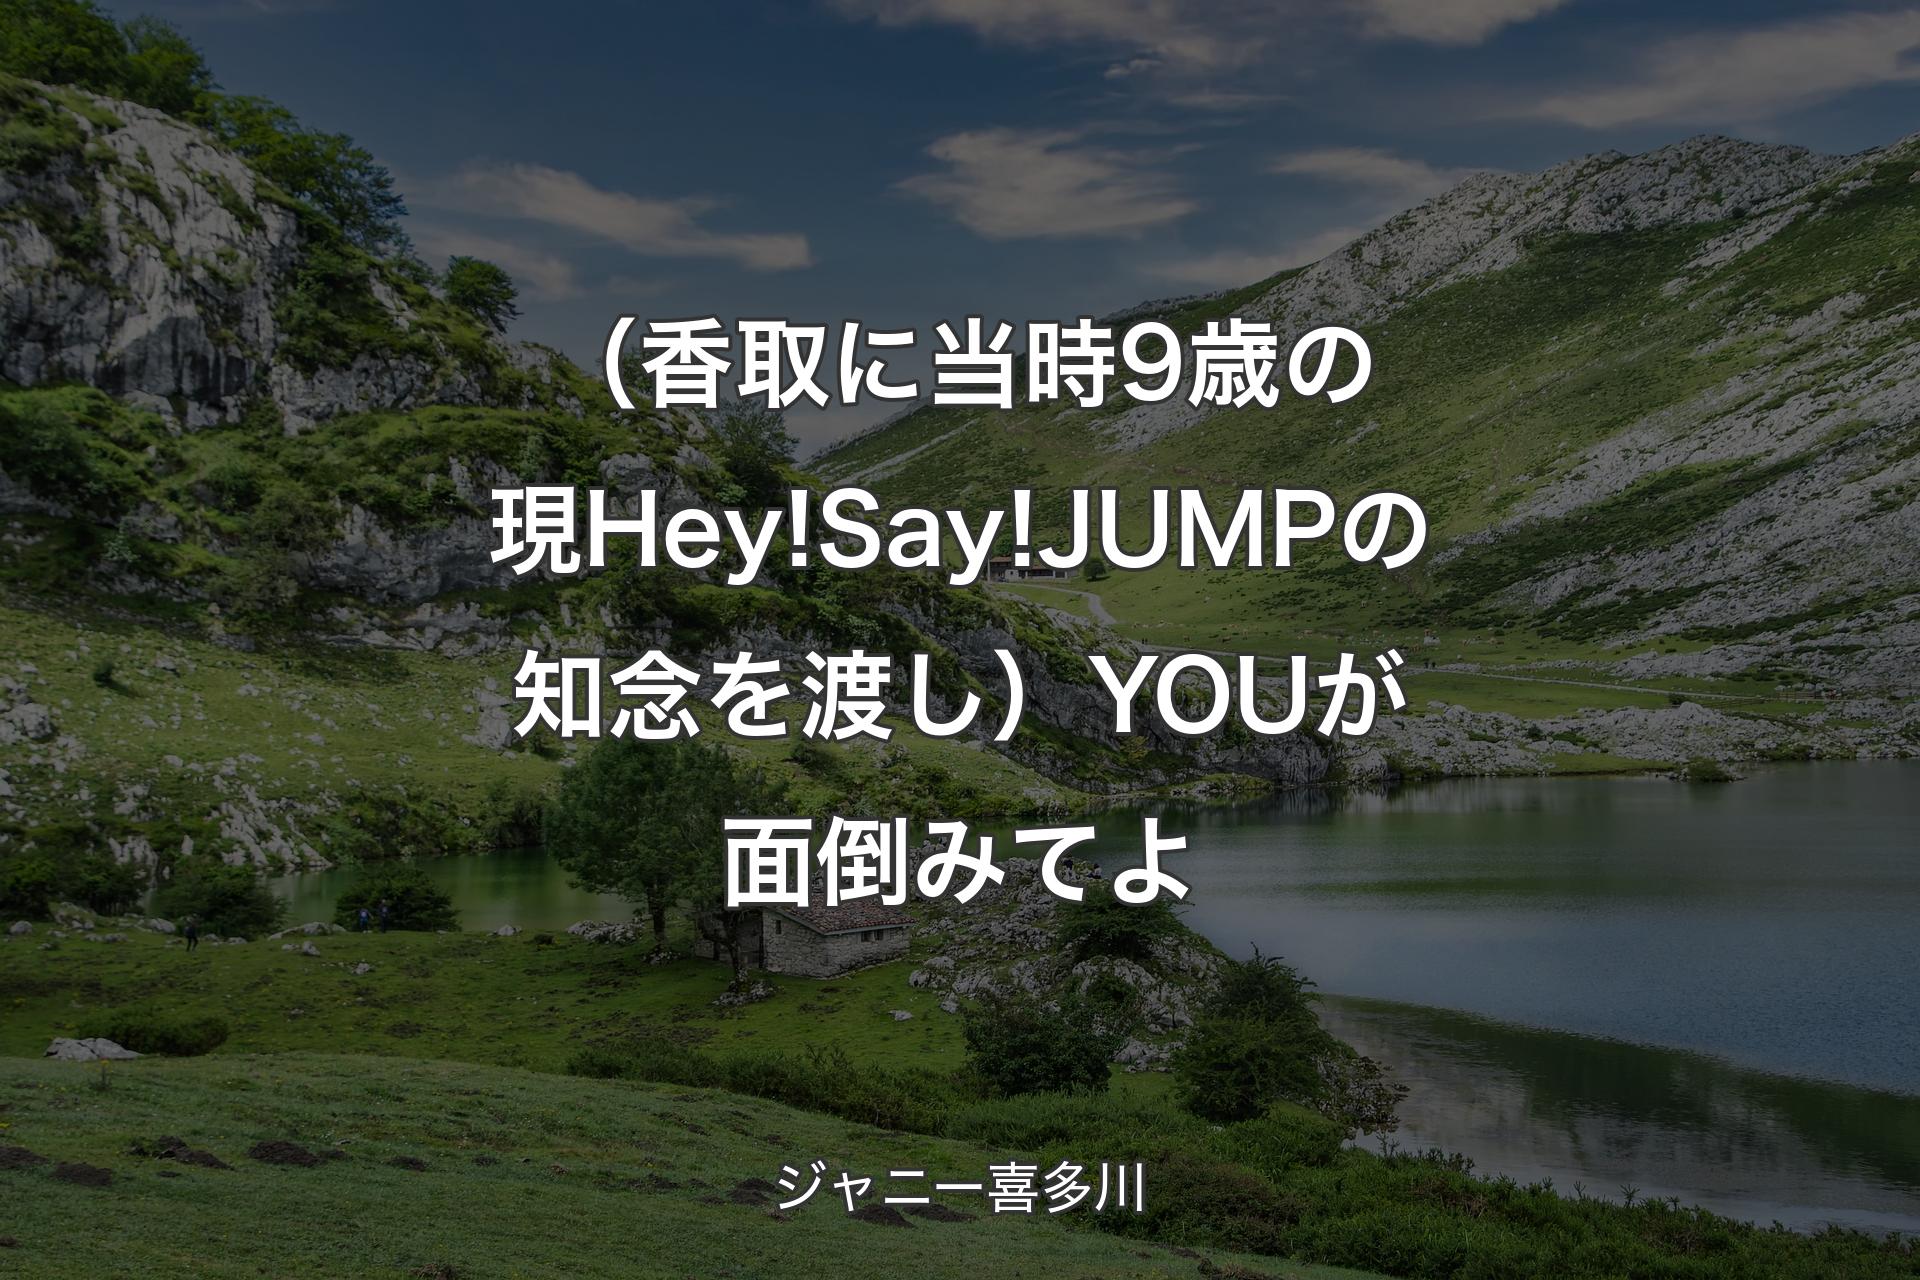 （香取に当時9歳の現Hey!Say!JUMPの知念を渡し）YOUが面倒みてよ - ジャニー喜多川